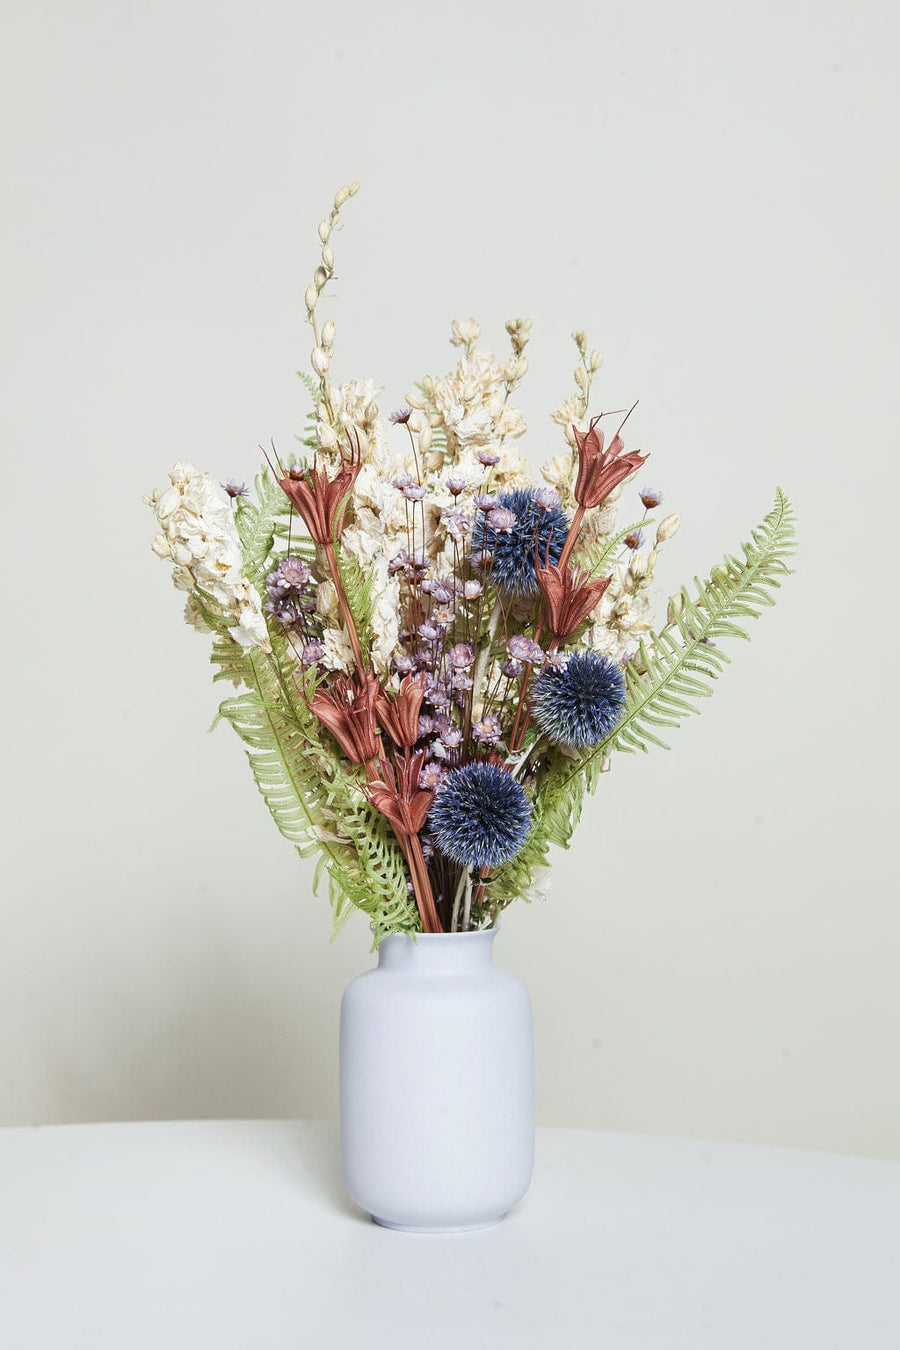 Idlewild Floral Co. Bouquets Farmhouse Petite Bouquet with Vase